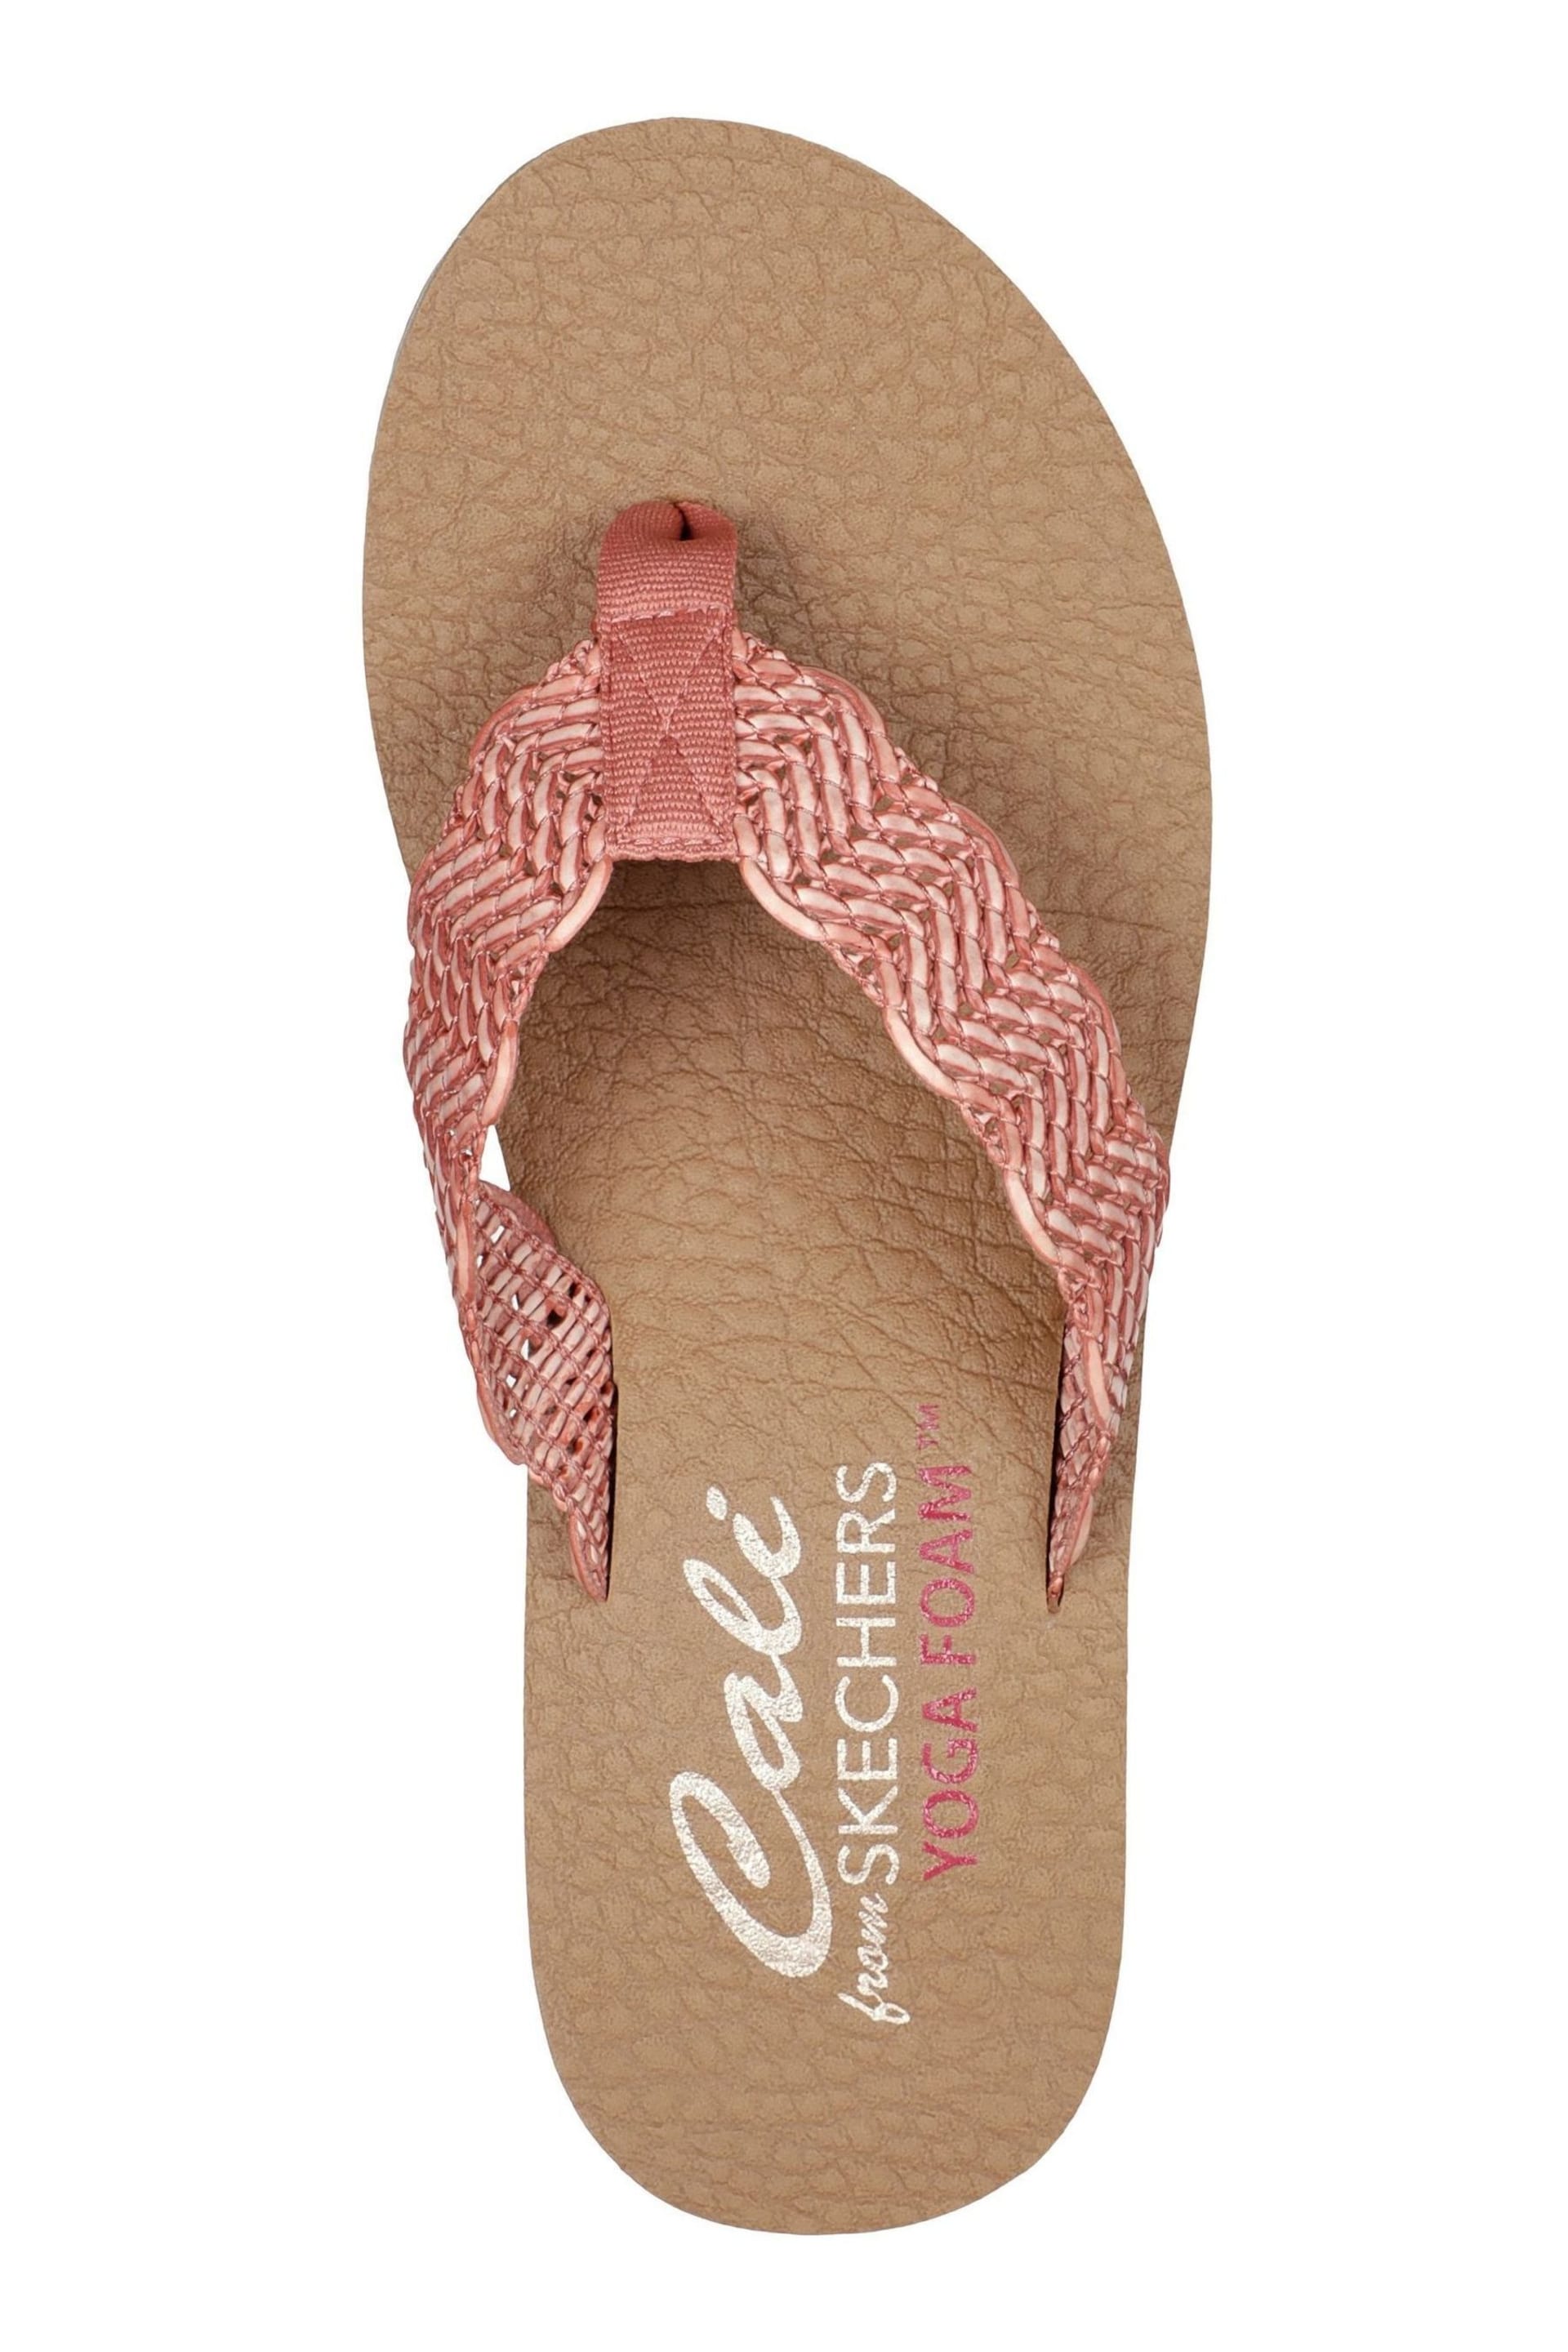 Skechers Pink Sandcomber Sandals - Image 4 of 5